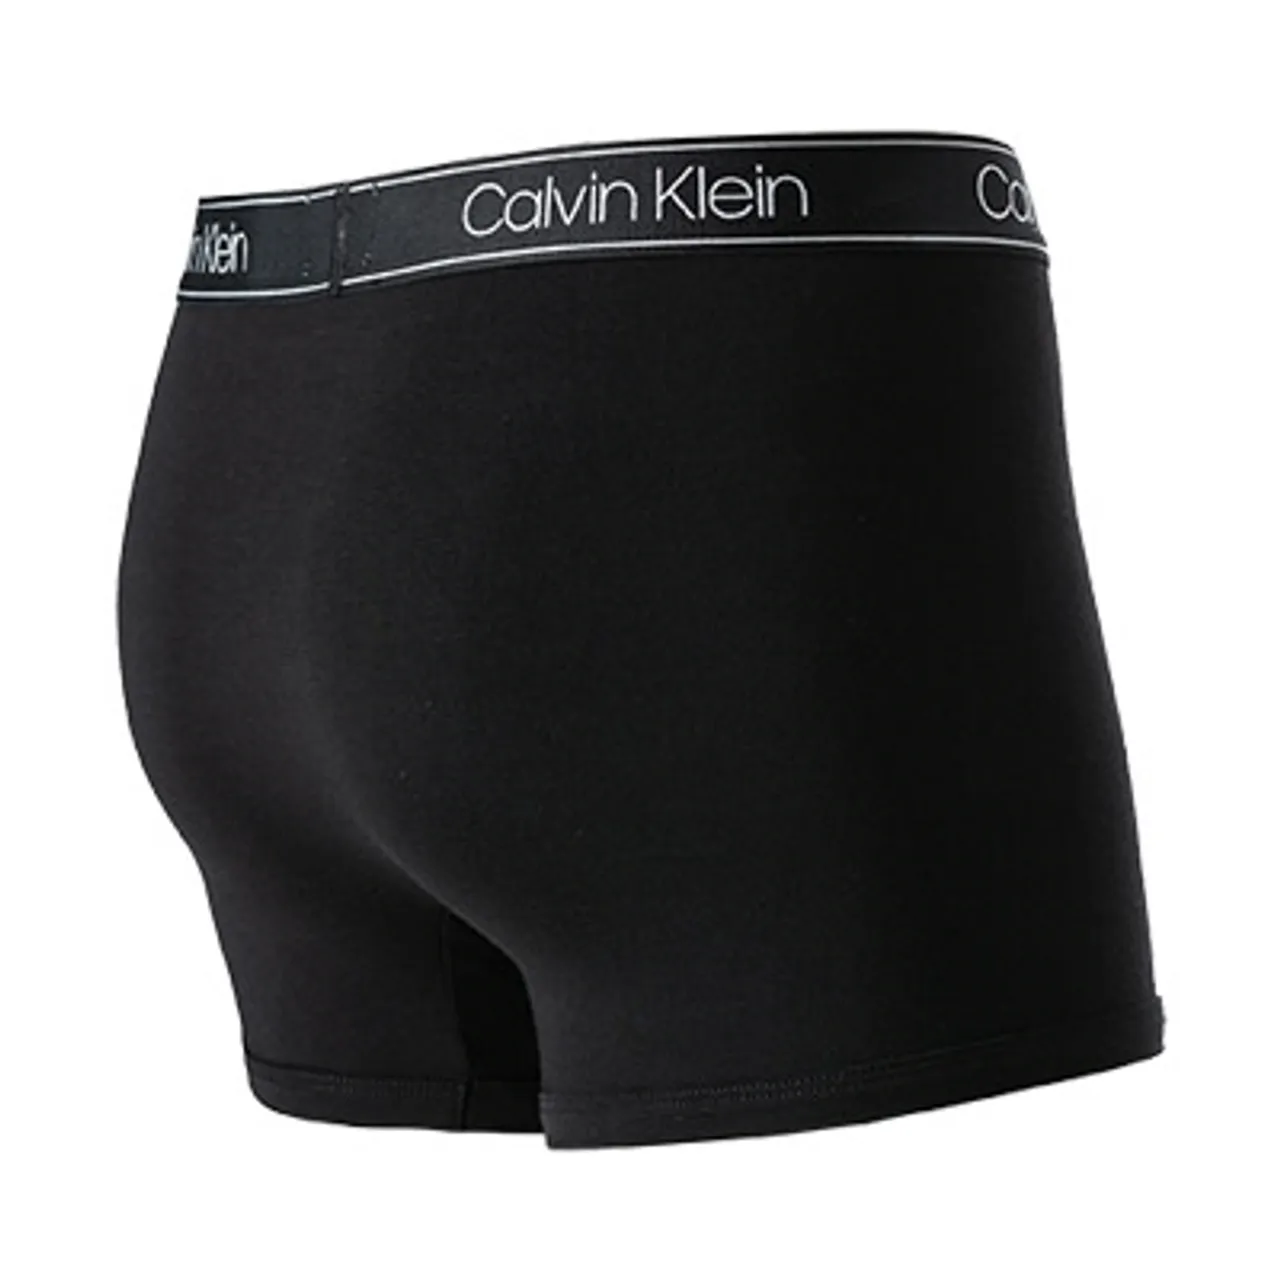 Calvin Klein Underwear Herren Trunk schwarz Viskose unifarben